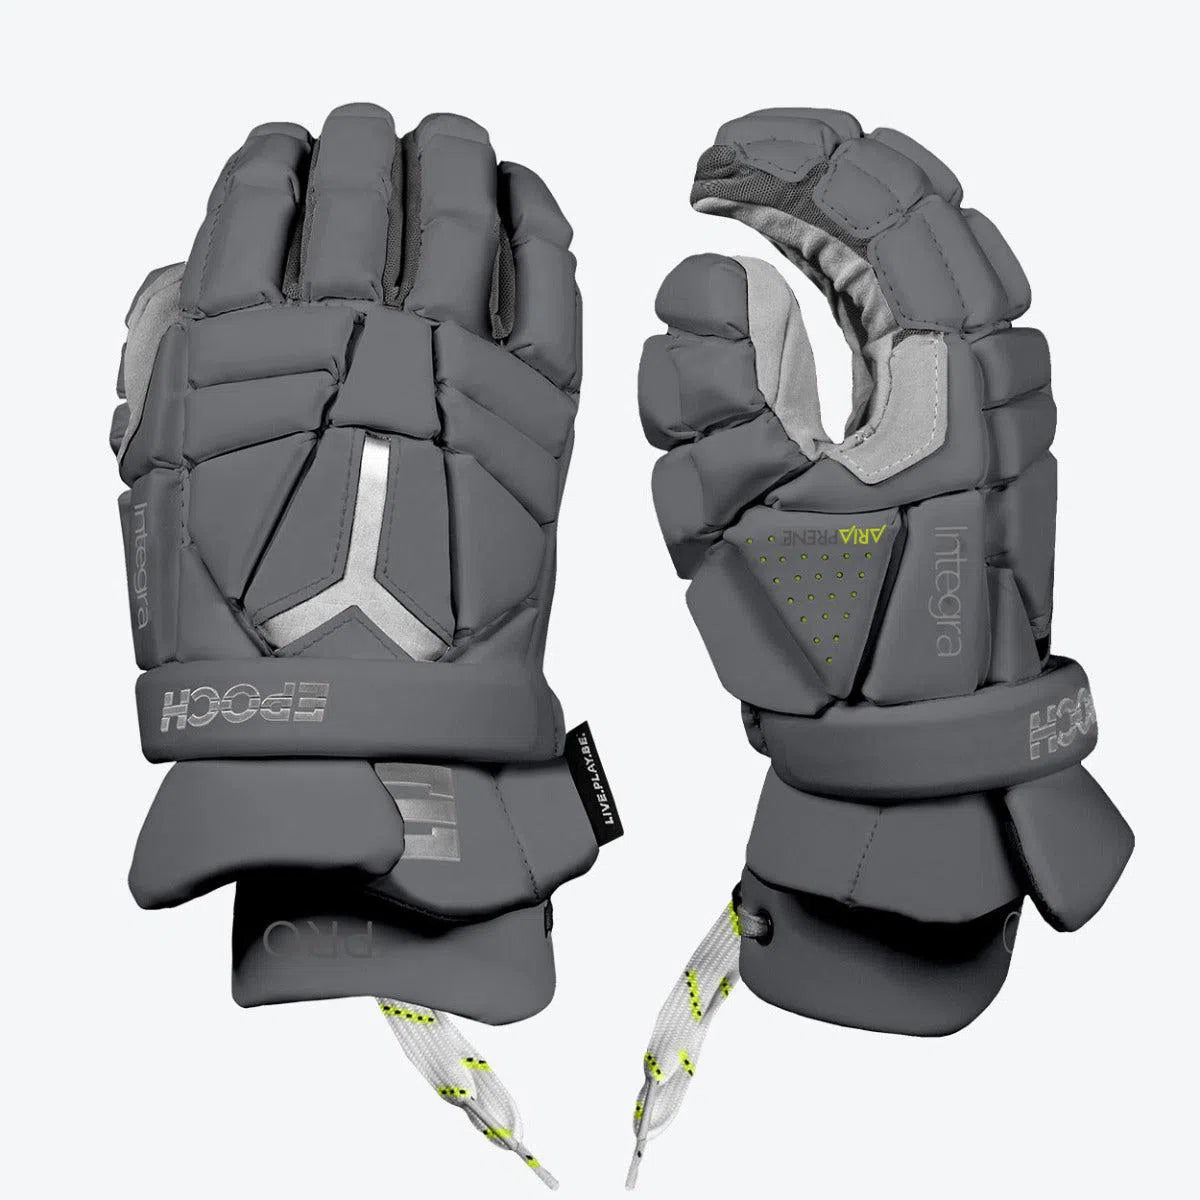 Epoch Integra Pro Lacrosse Gloves